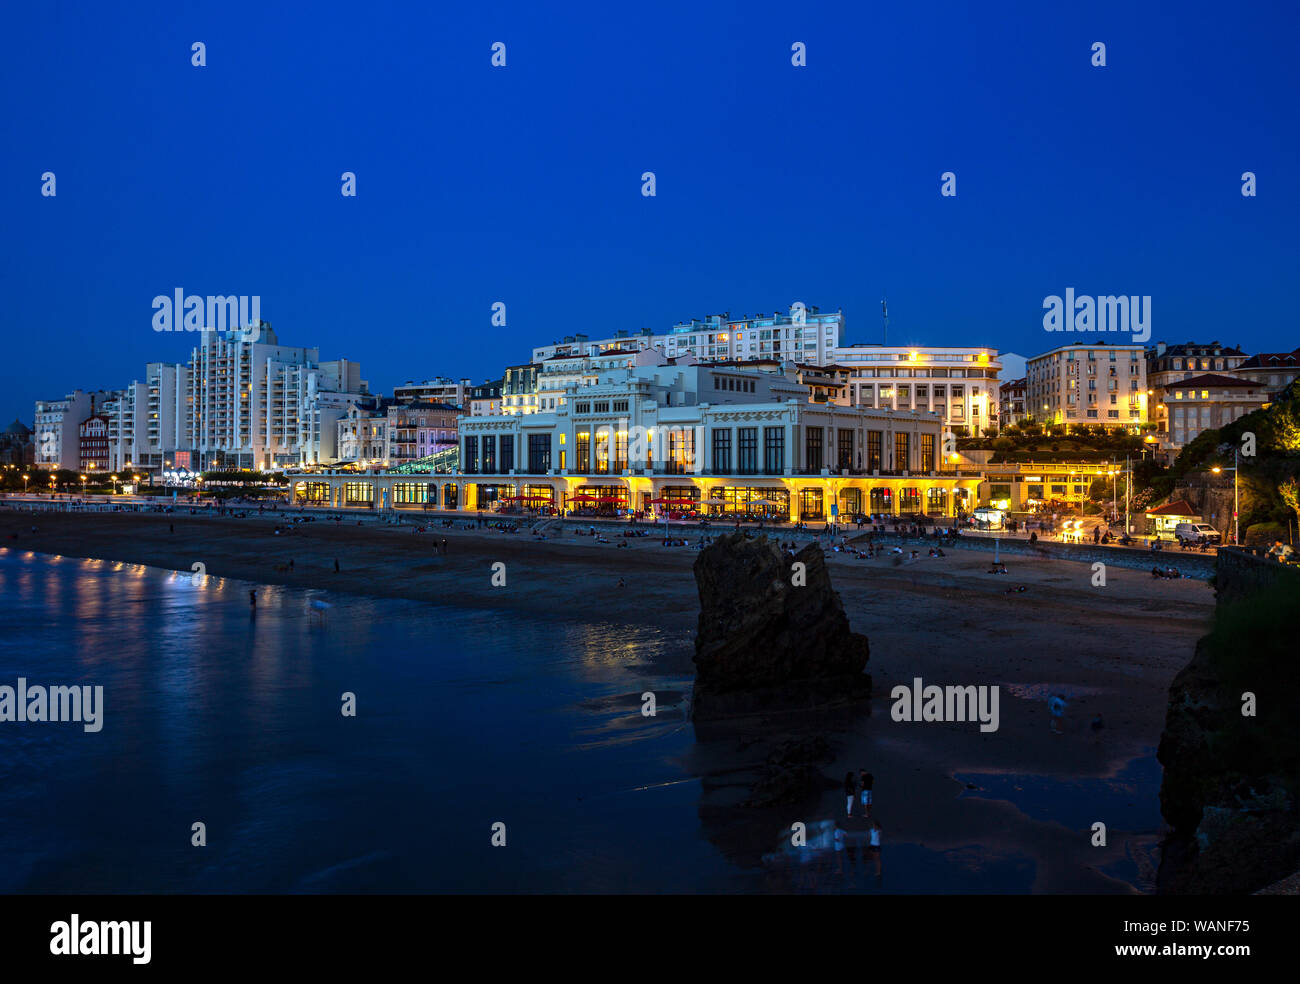 In der Dunkelheit, der Städtischen Casino und Strand von Biarritz (Frankreich). Dieser Raum begrüßt, den G7-Gipfel 2019 Vom 24. bis 26. August. Stockfoto